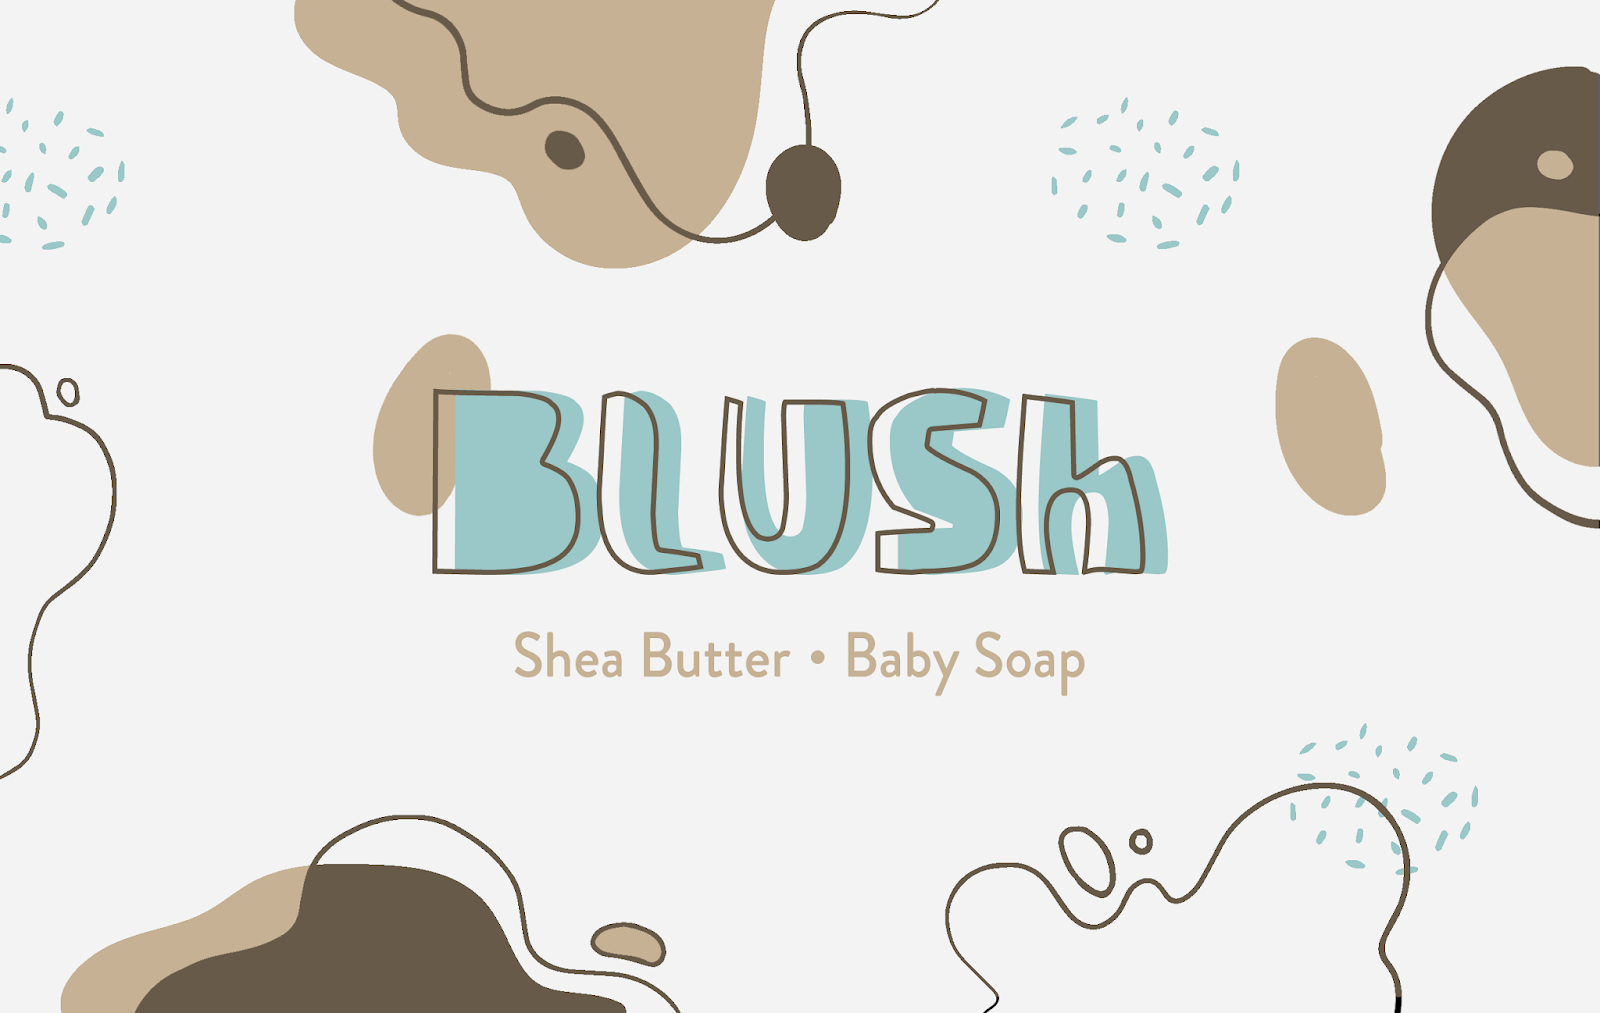 婴儿护理香皂洗护西安oe欧亿体育app官方下载
品牌策划包装设计VI设计logo设计